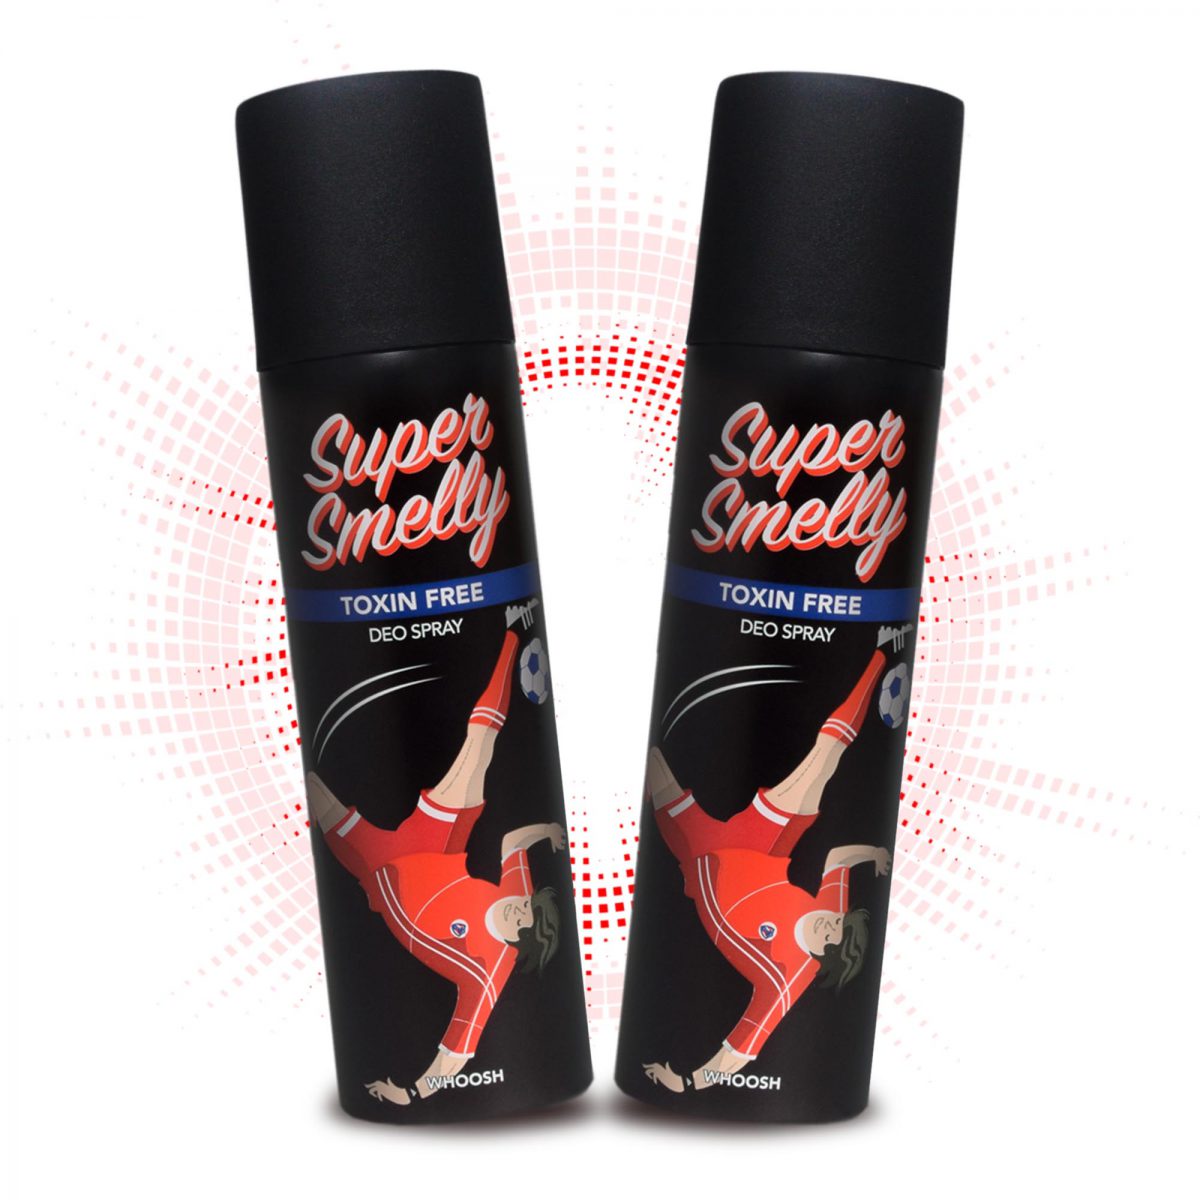 Whoosh Natural Long Lasting Deodorant Spray